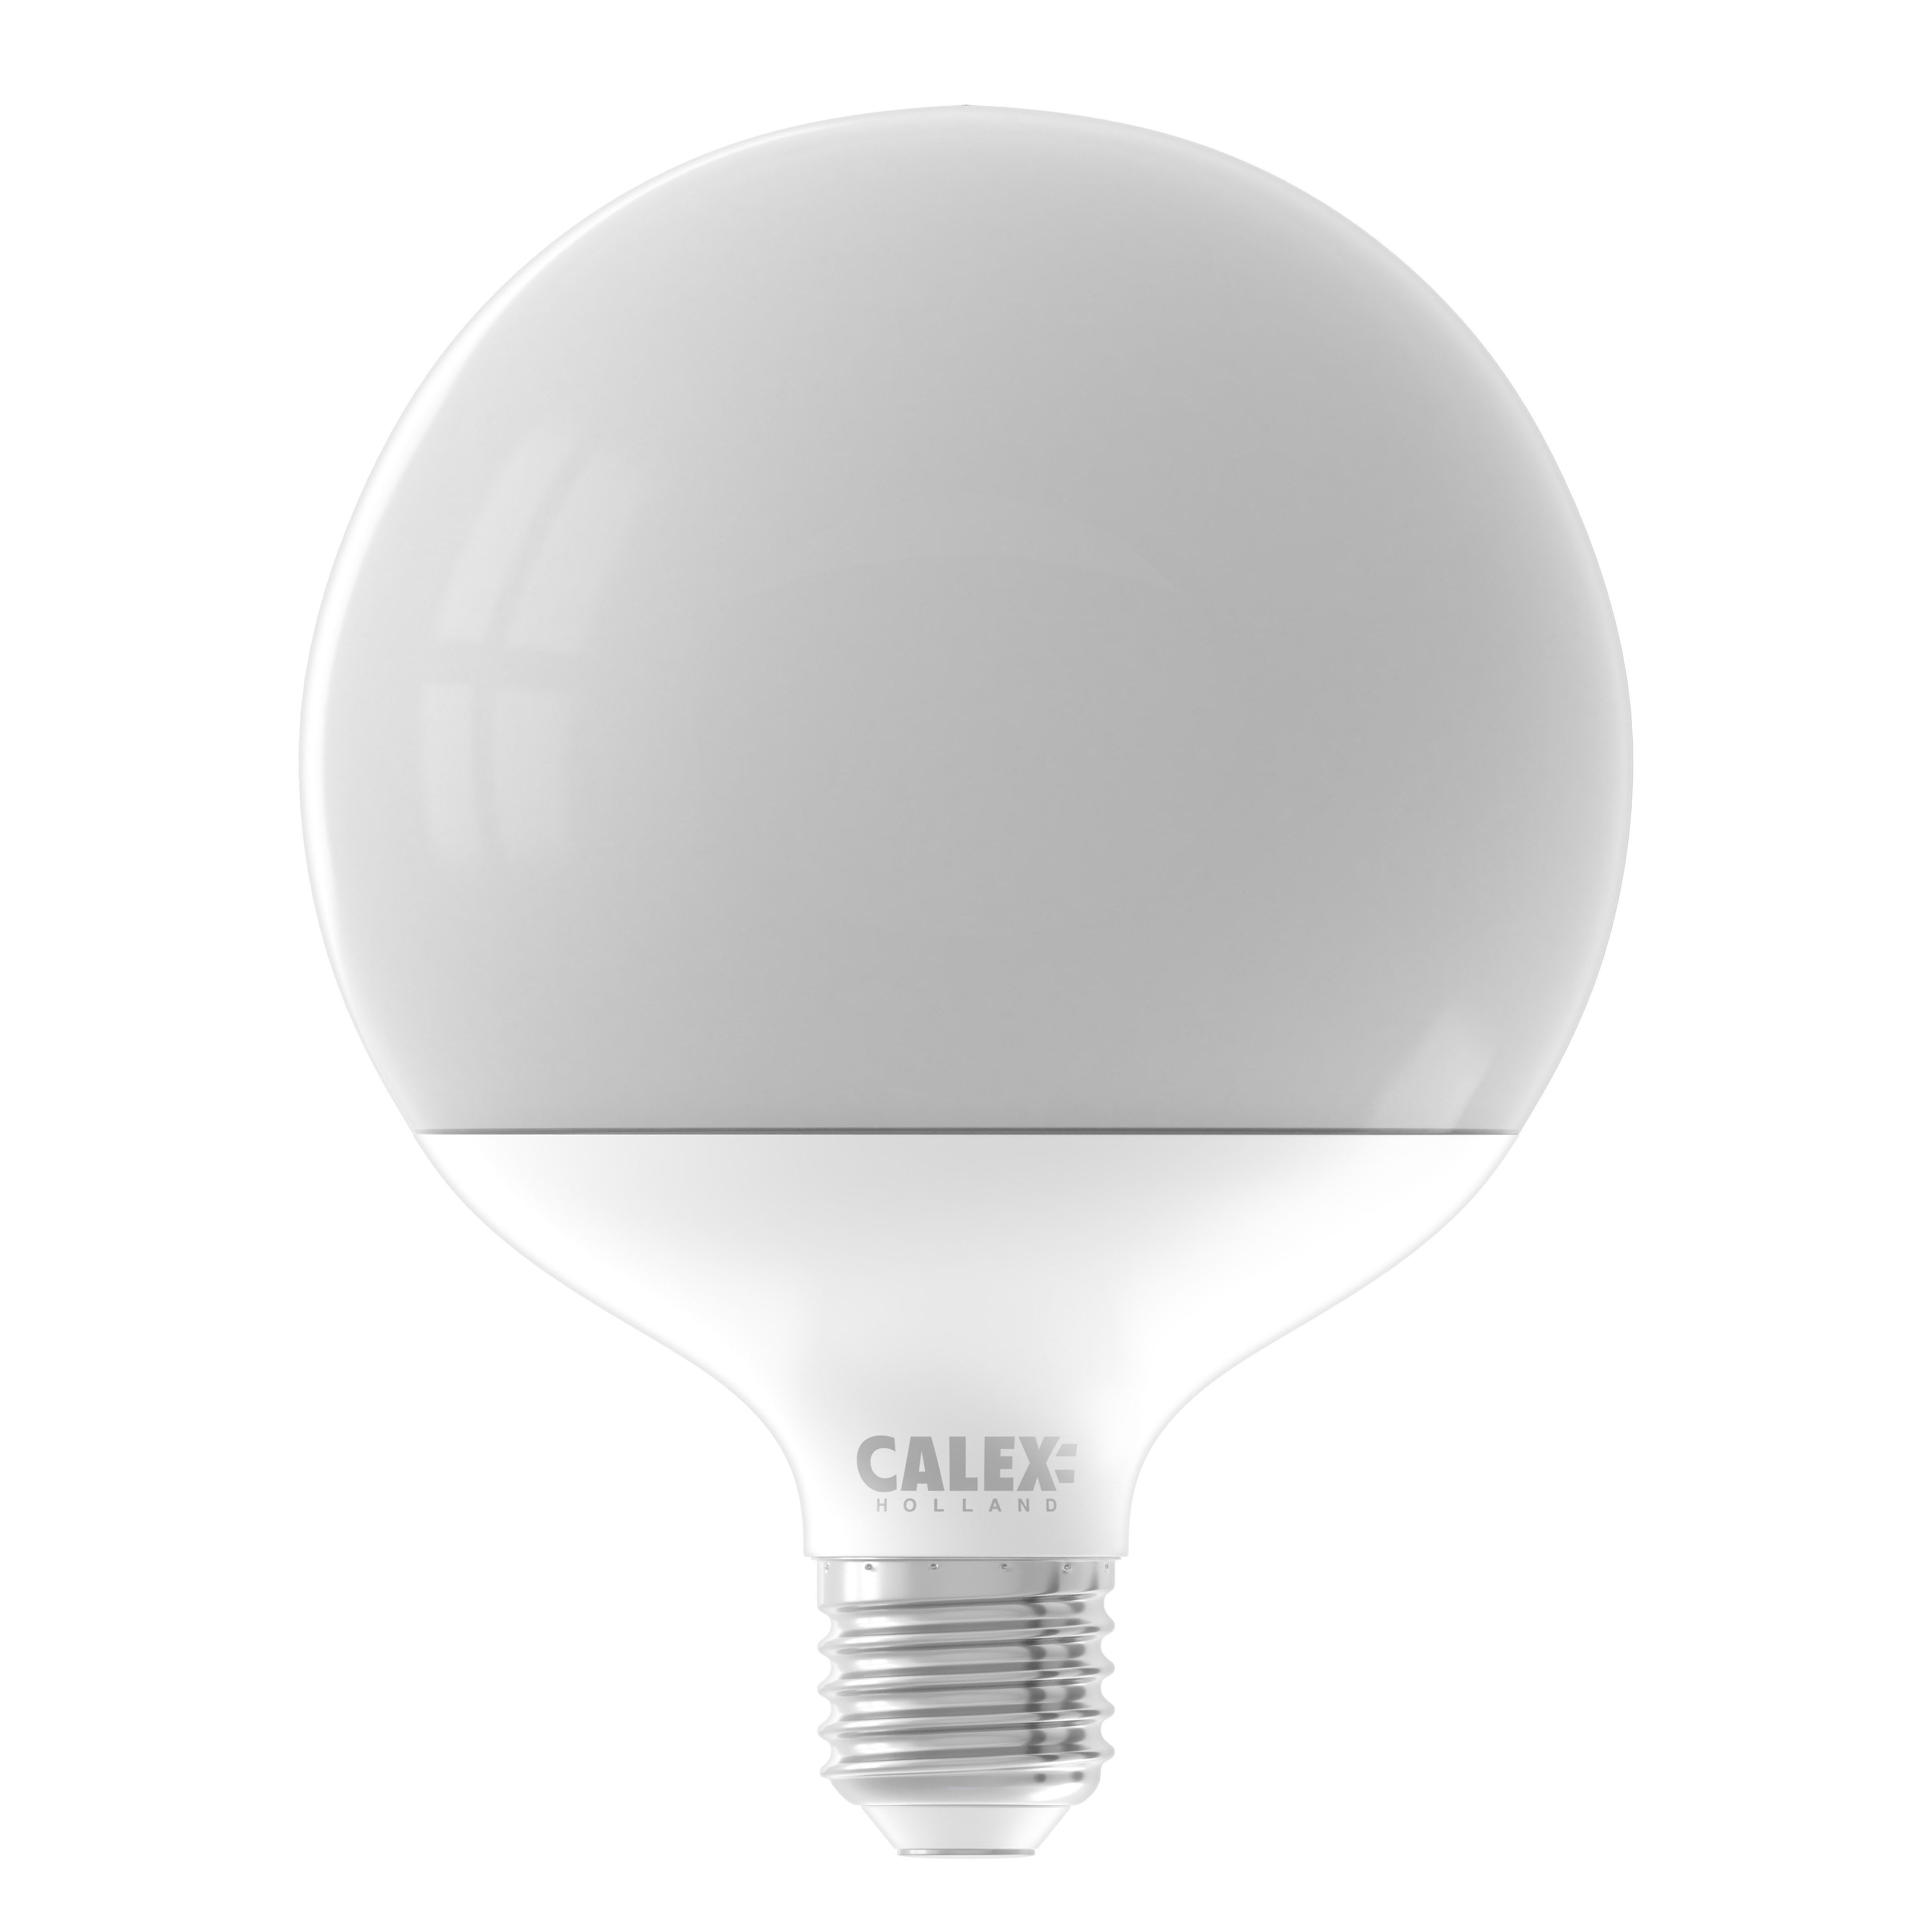 Lampe à led E14 - Culot : E14 Type de lampe : Led Couleur de la lumière :  Blanc neutre Intensité lumineuse : 410 lumens